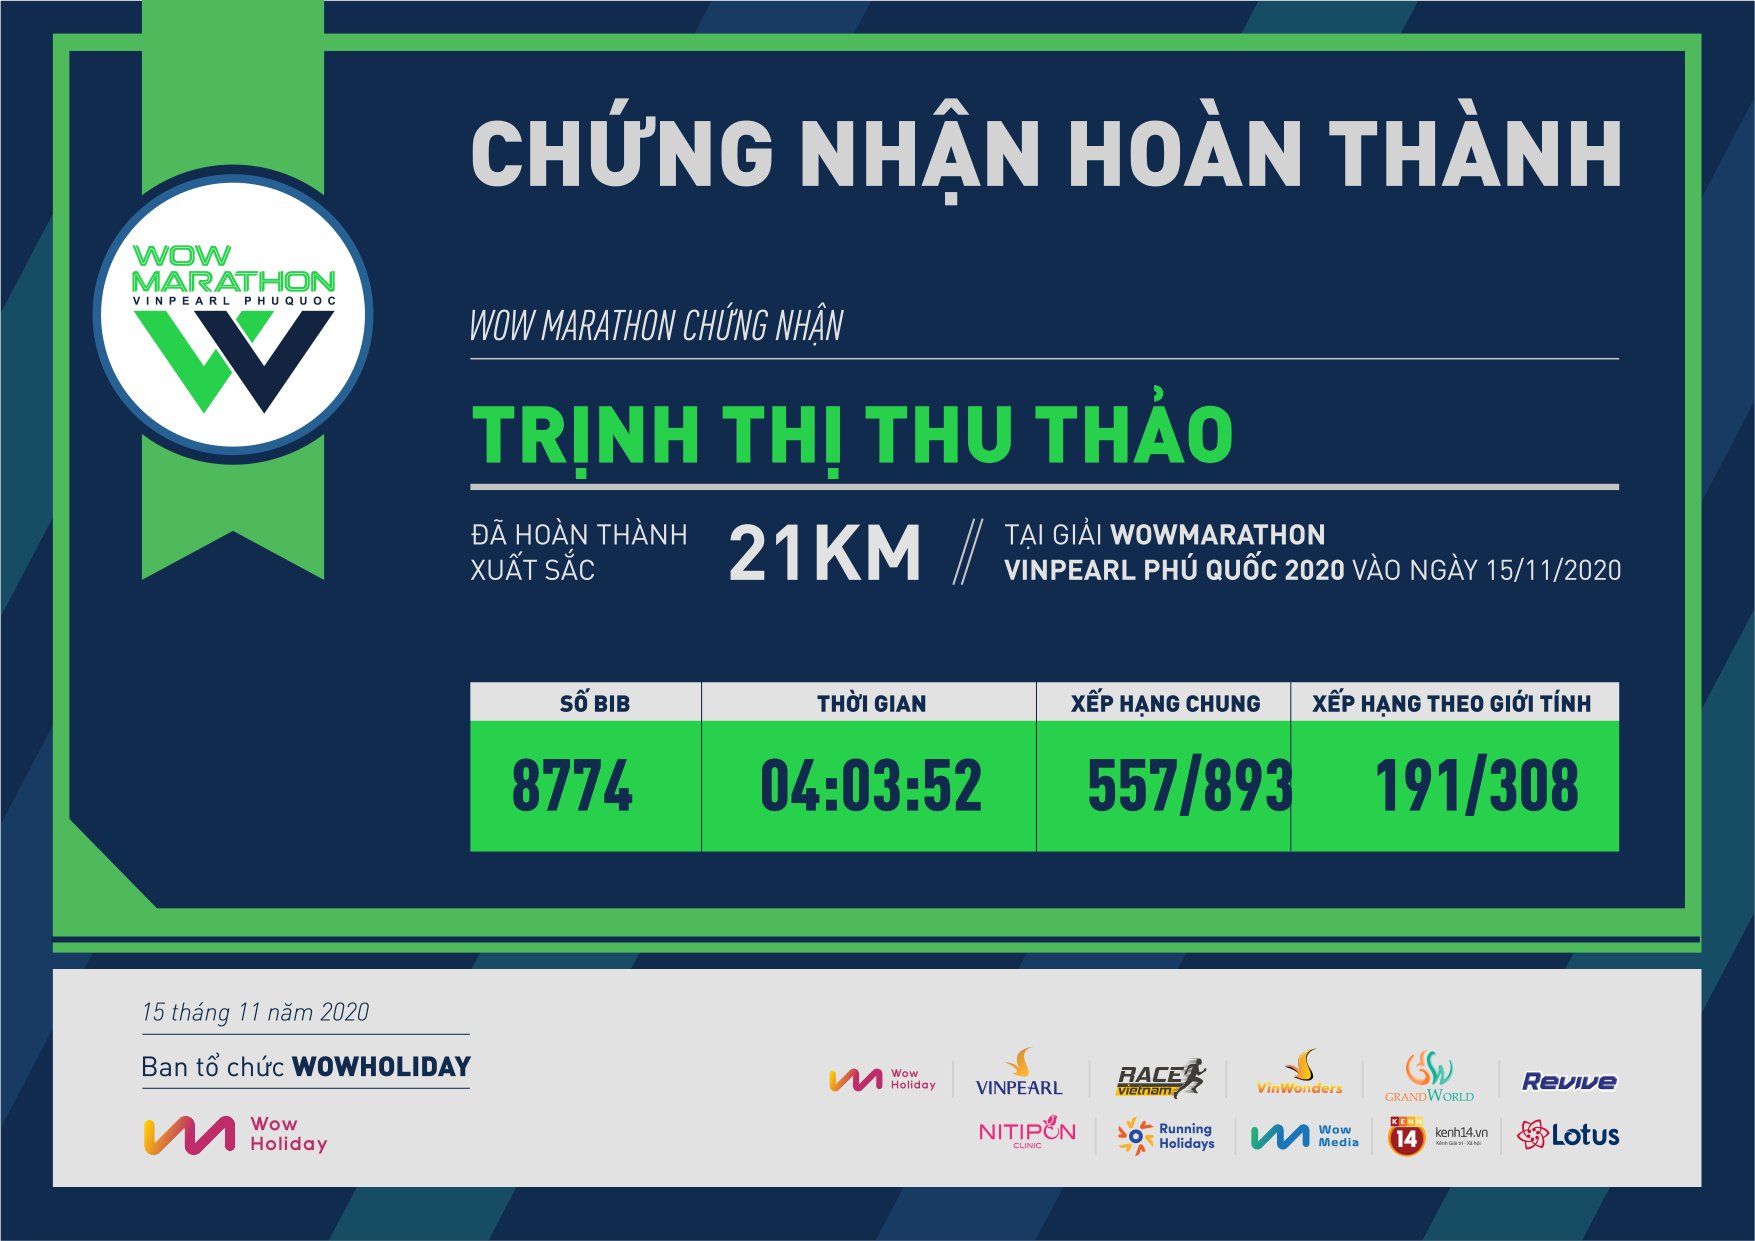 8774 - Trịnh Thị Thu Thảo